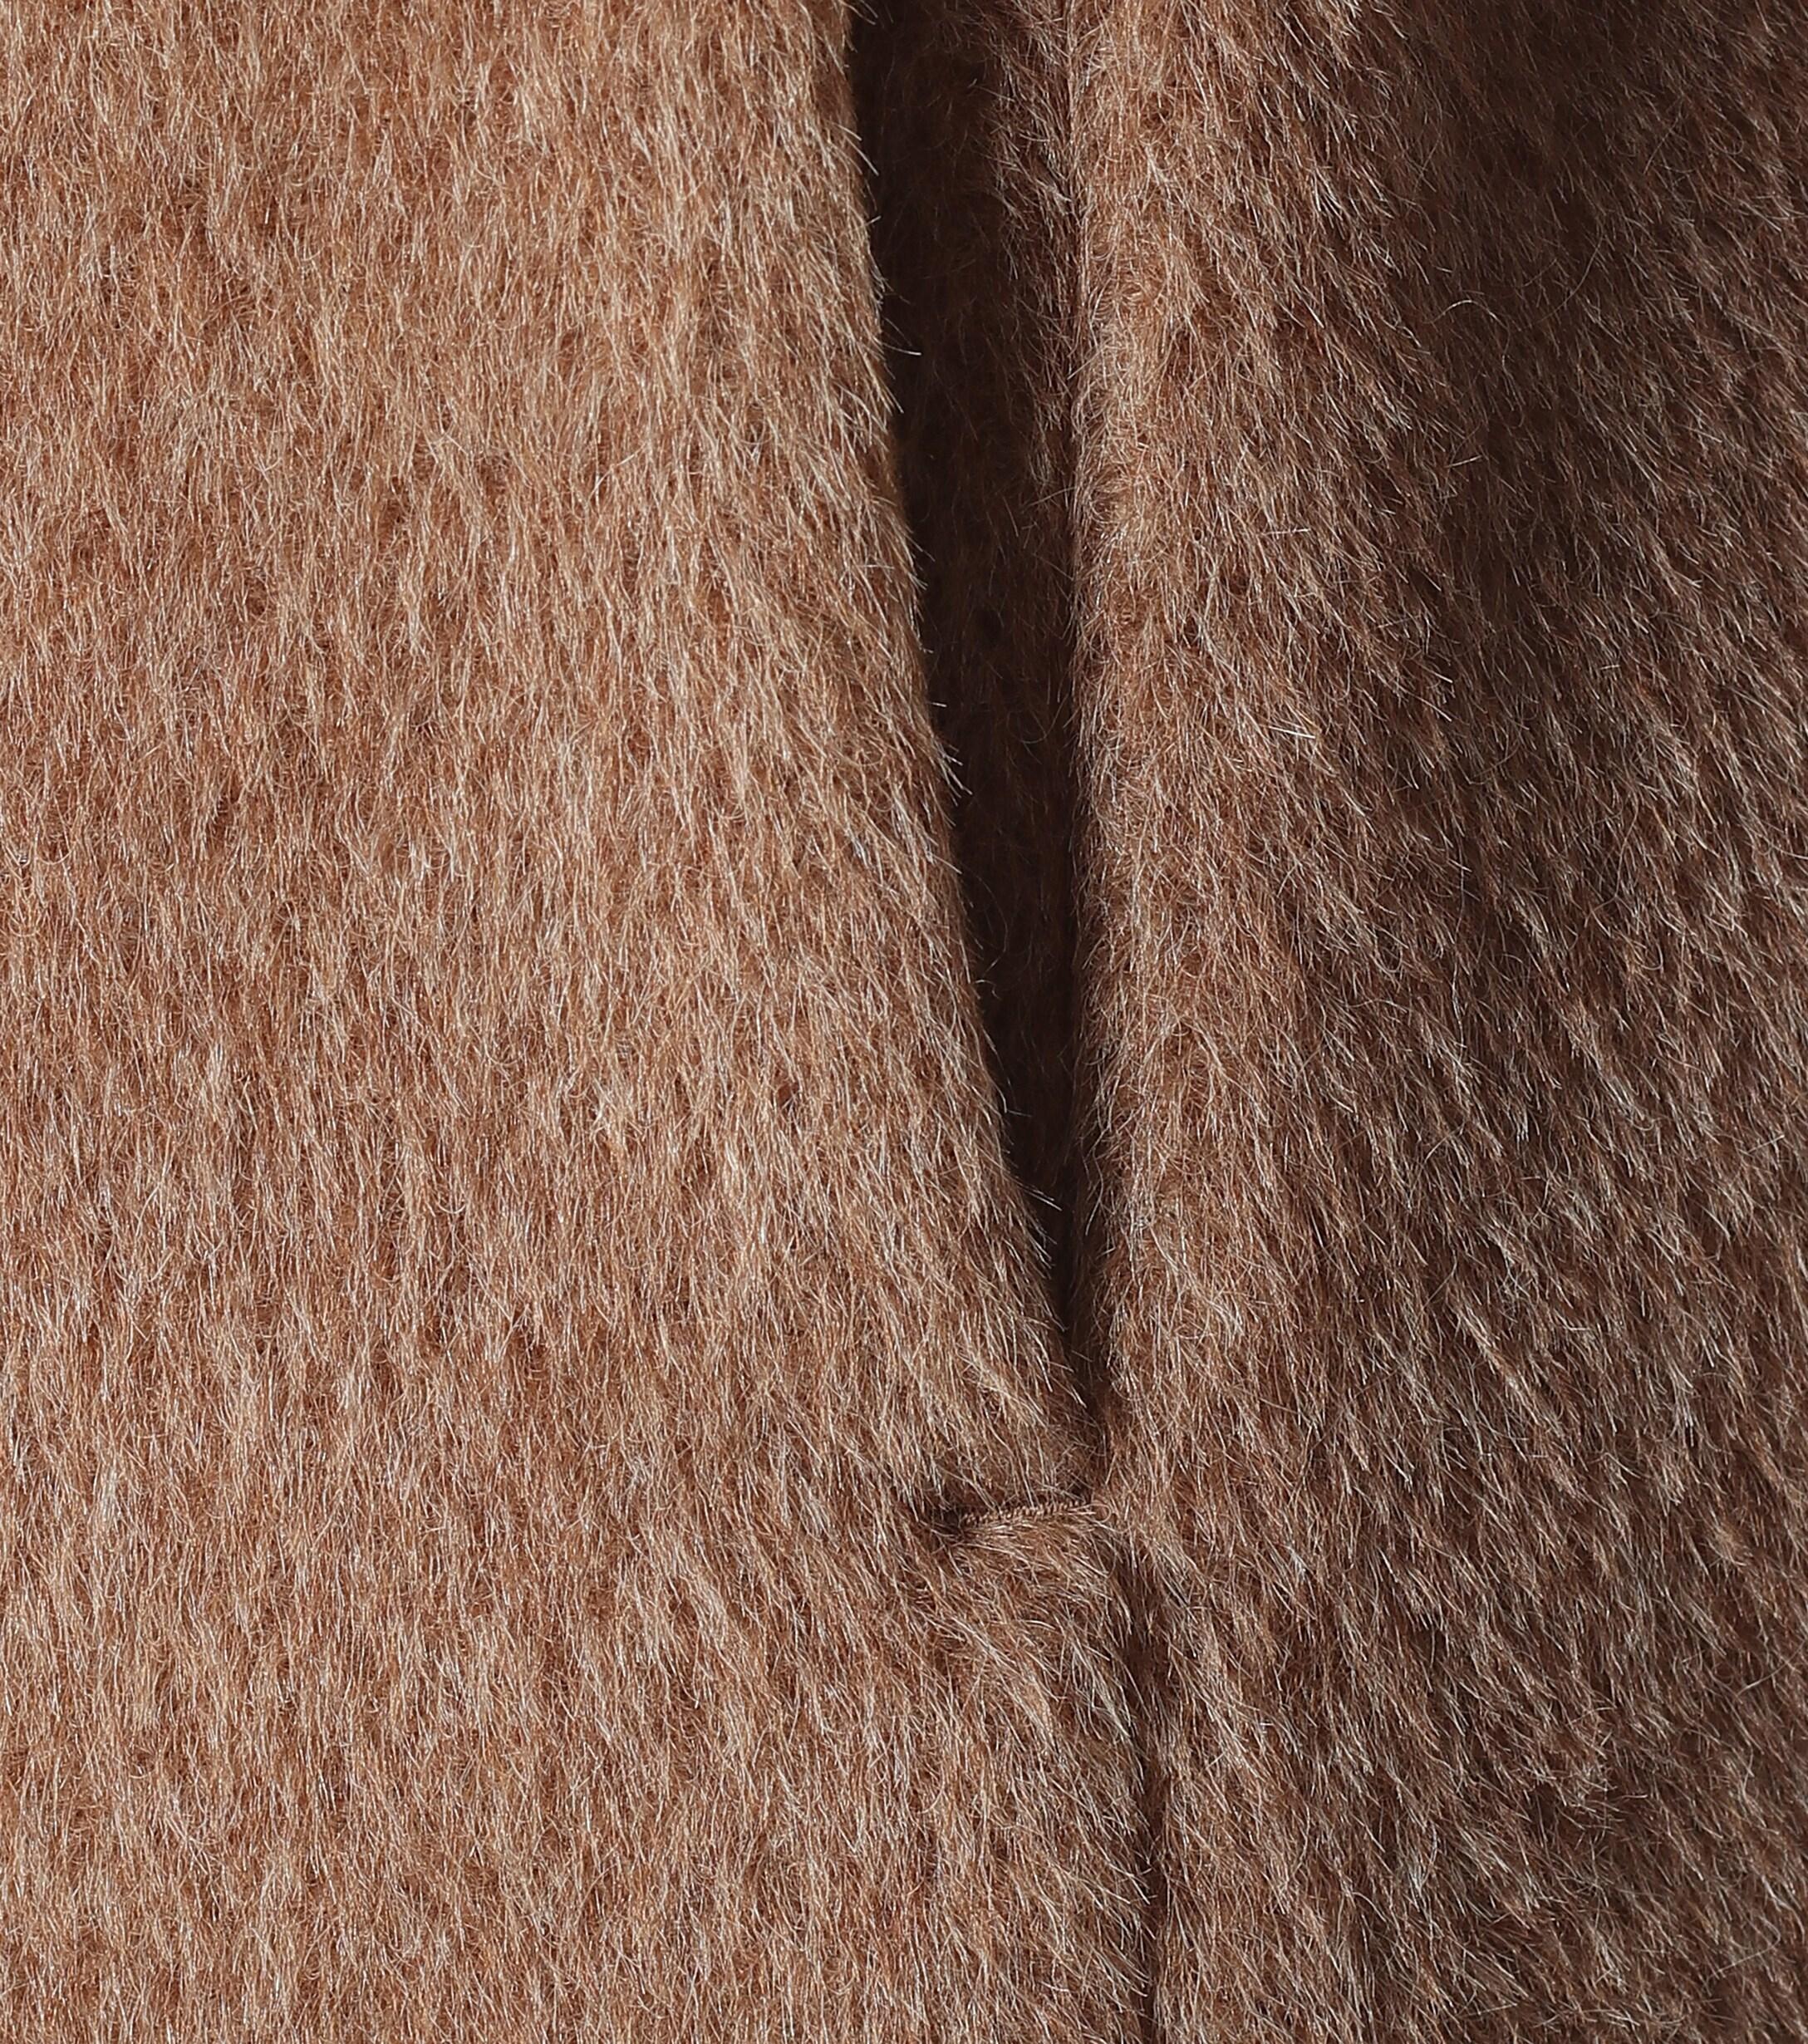 Max Mara Locri Alpaca And Wool Coat in Brown - Lyst